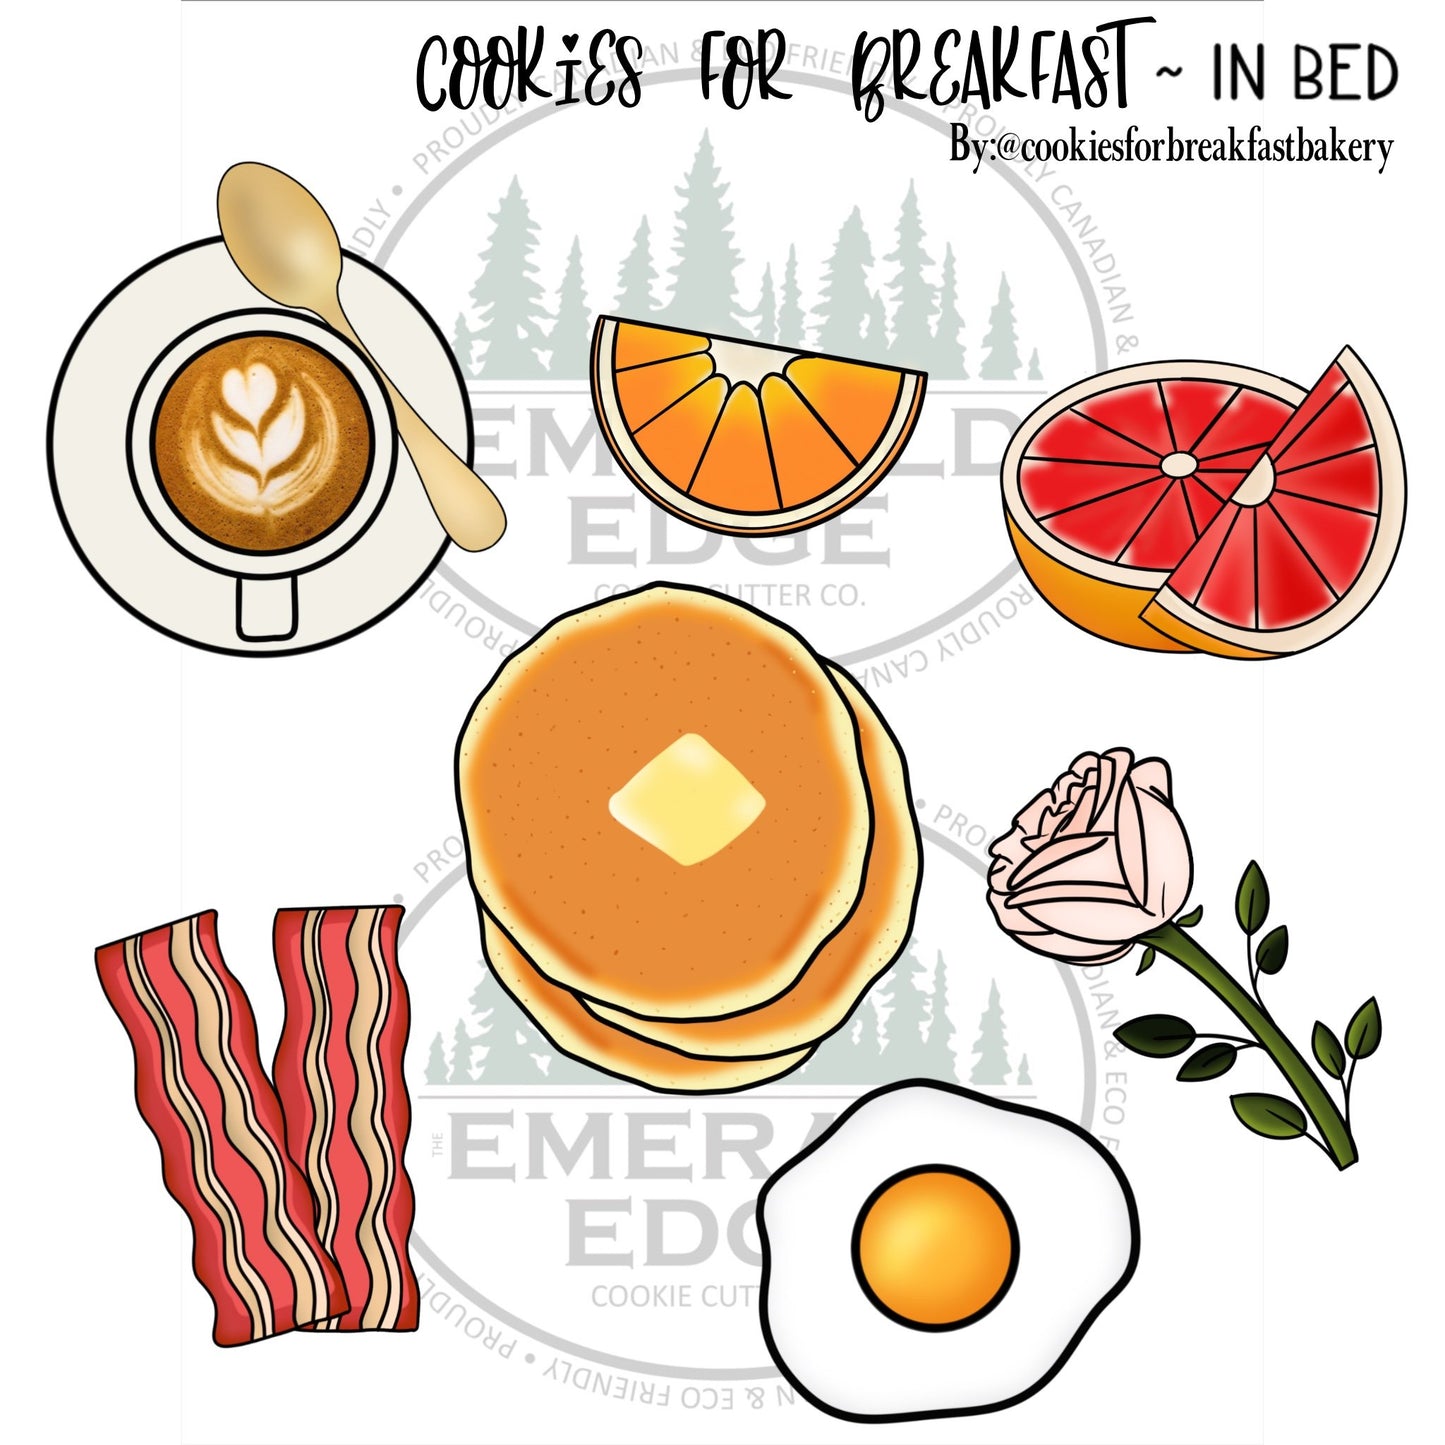 Cookies For Breakfast-In Bed ~ Pancakes